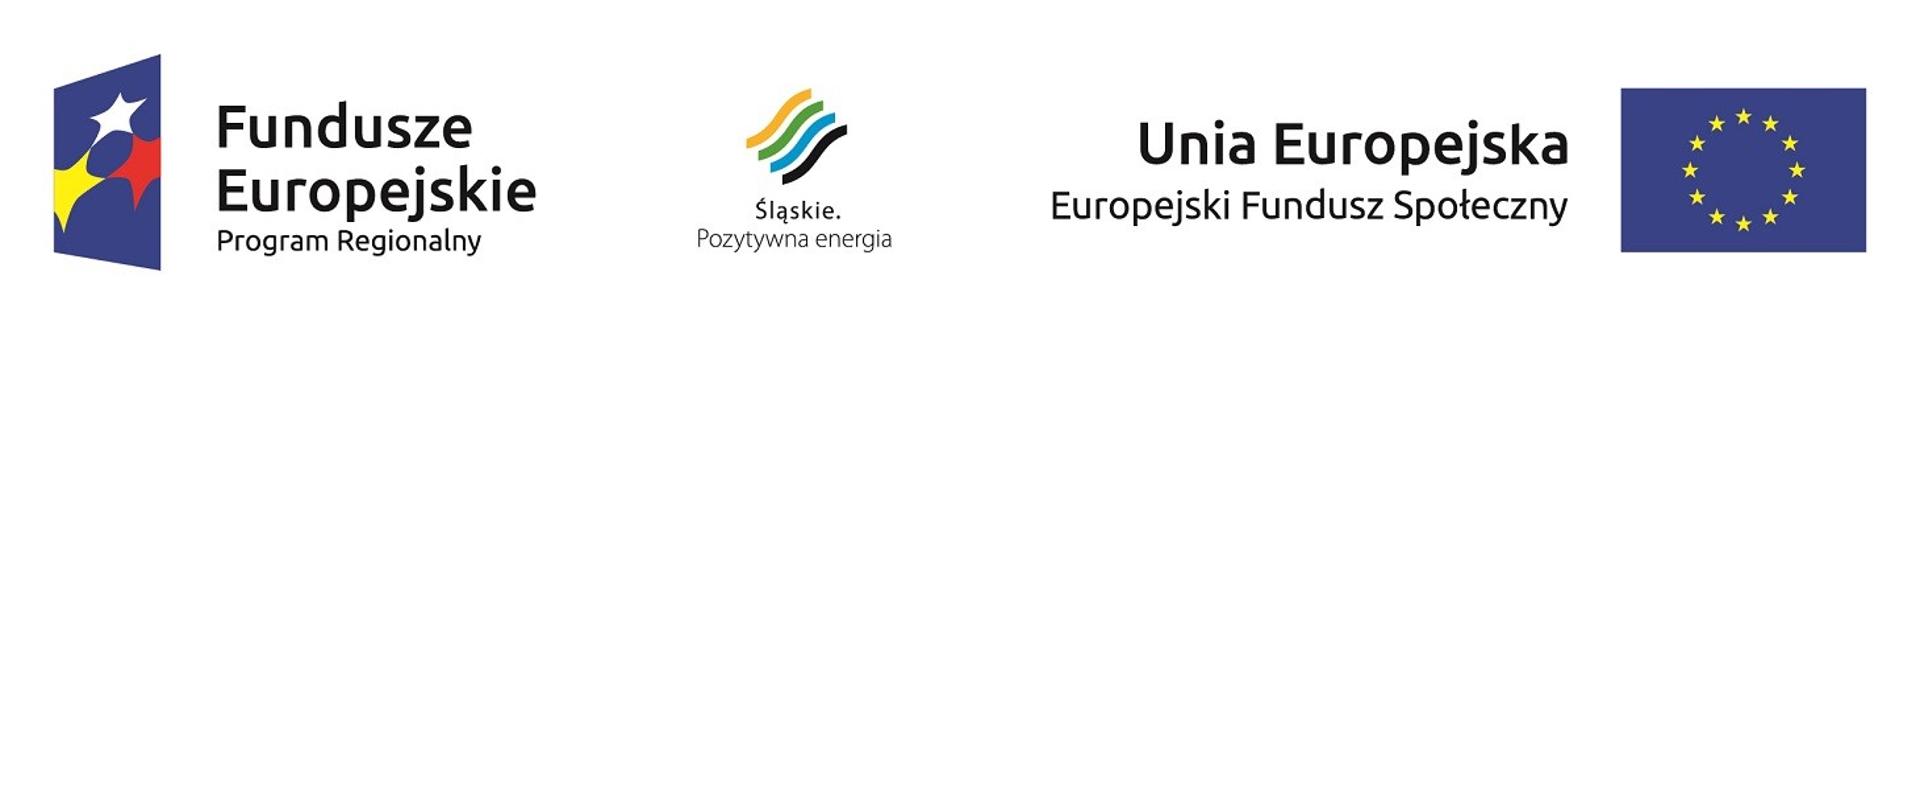 Od lewej krawędzi do prawej w poziomie loga: Fundusze Europejskie Program Regionalny, Śląskie. Pozytywna energia, Unia Europejska Europejski Fundusz Społeczny